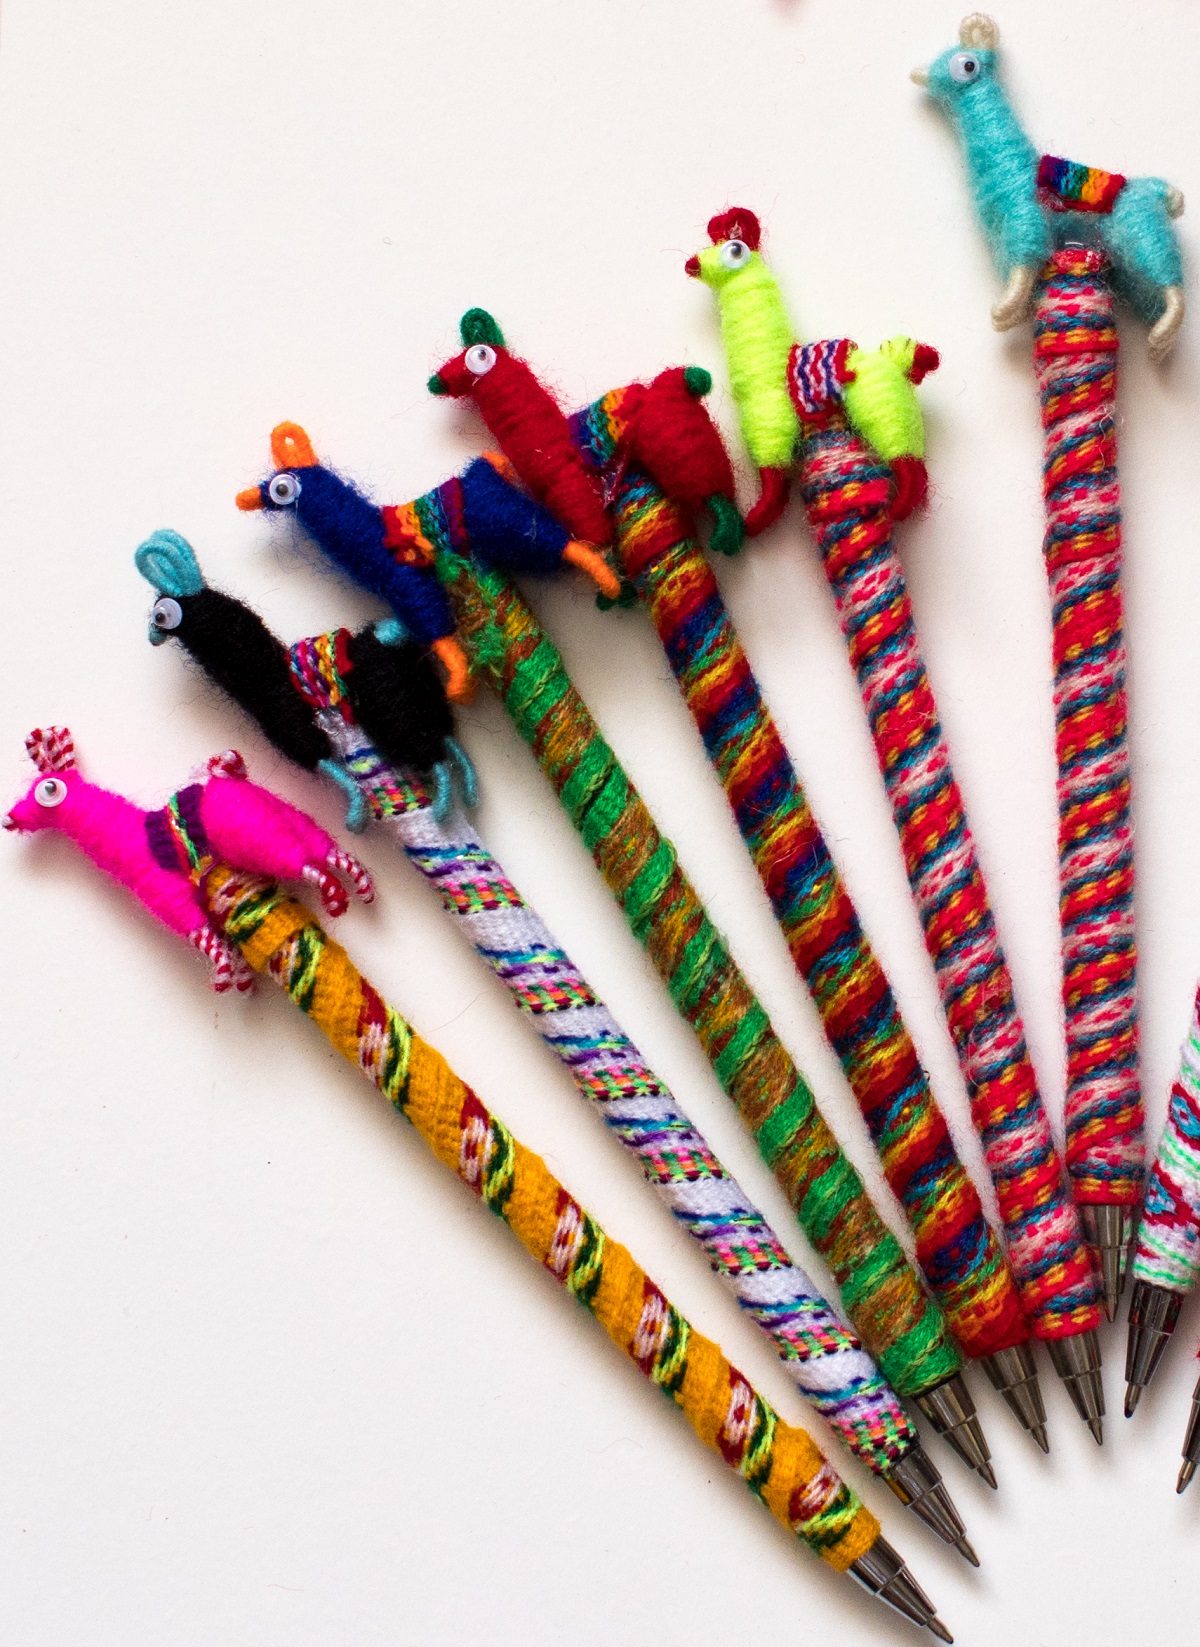 Set of 3 Pens Peruvian Handmade Llama Pens Artisan Assorted Colors from Peru 